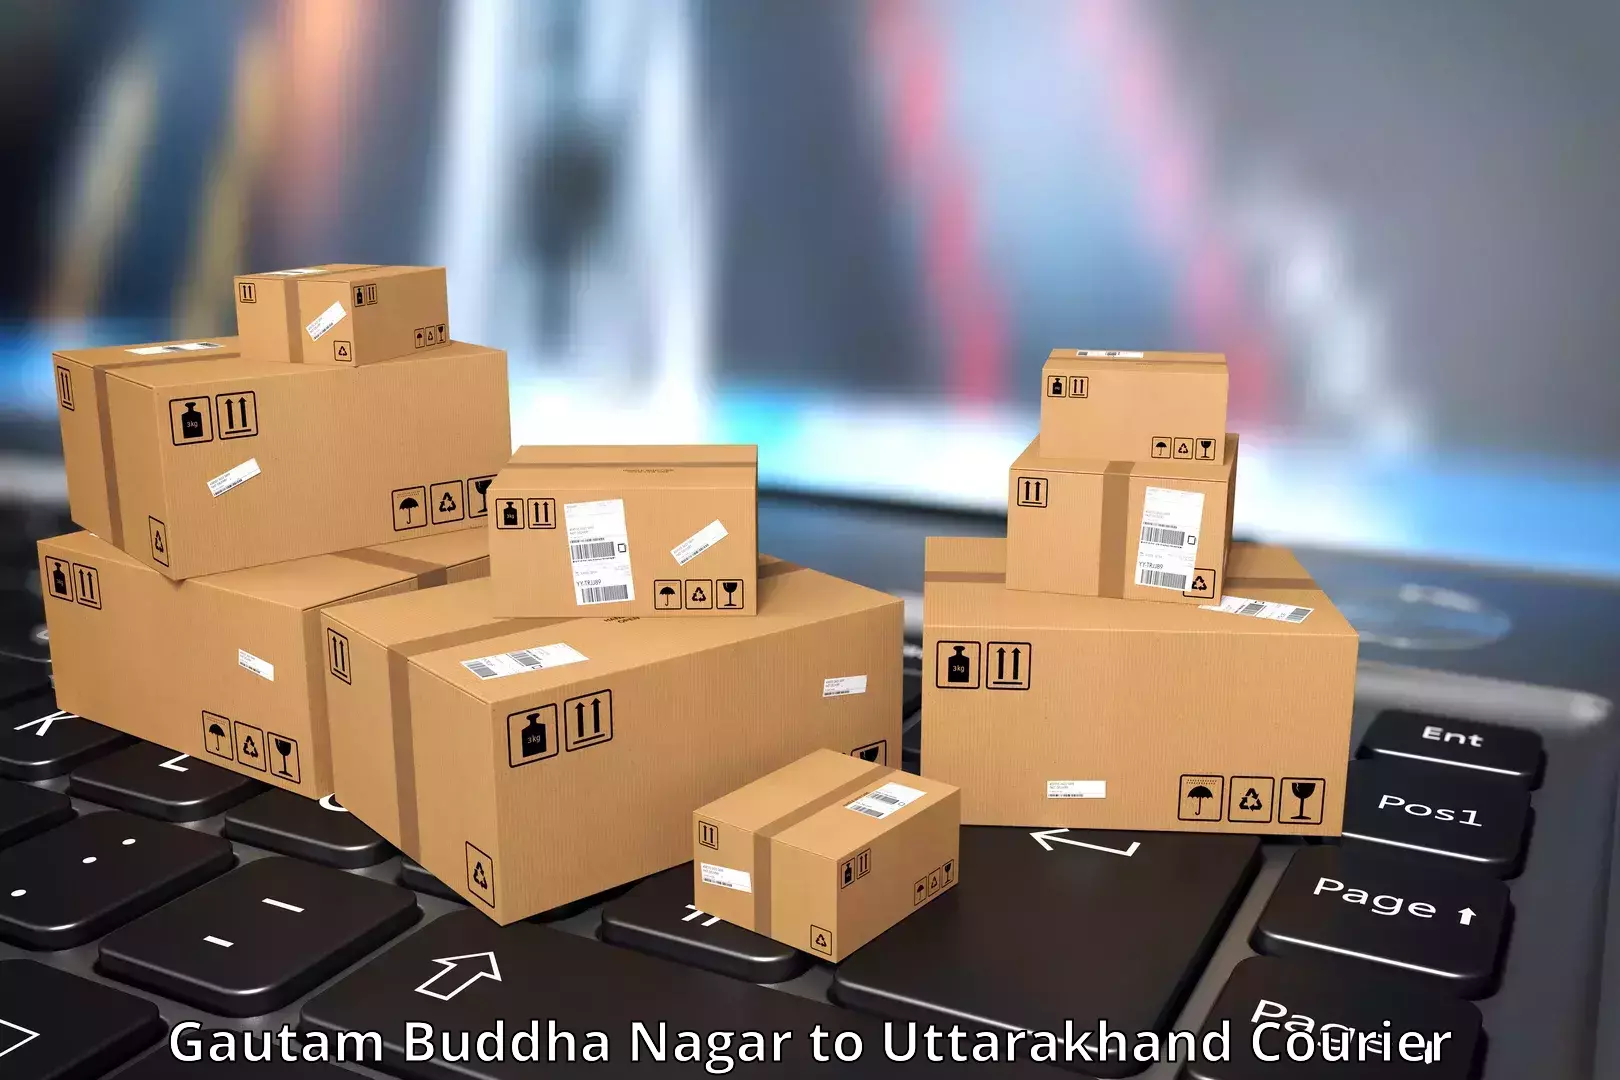 User-friendly courier app Gautam Buddha Nagar to Mussoorie